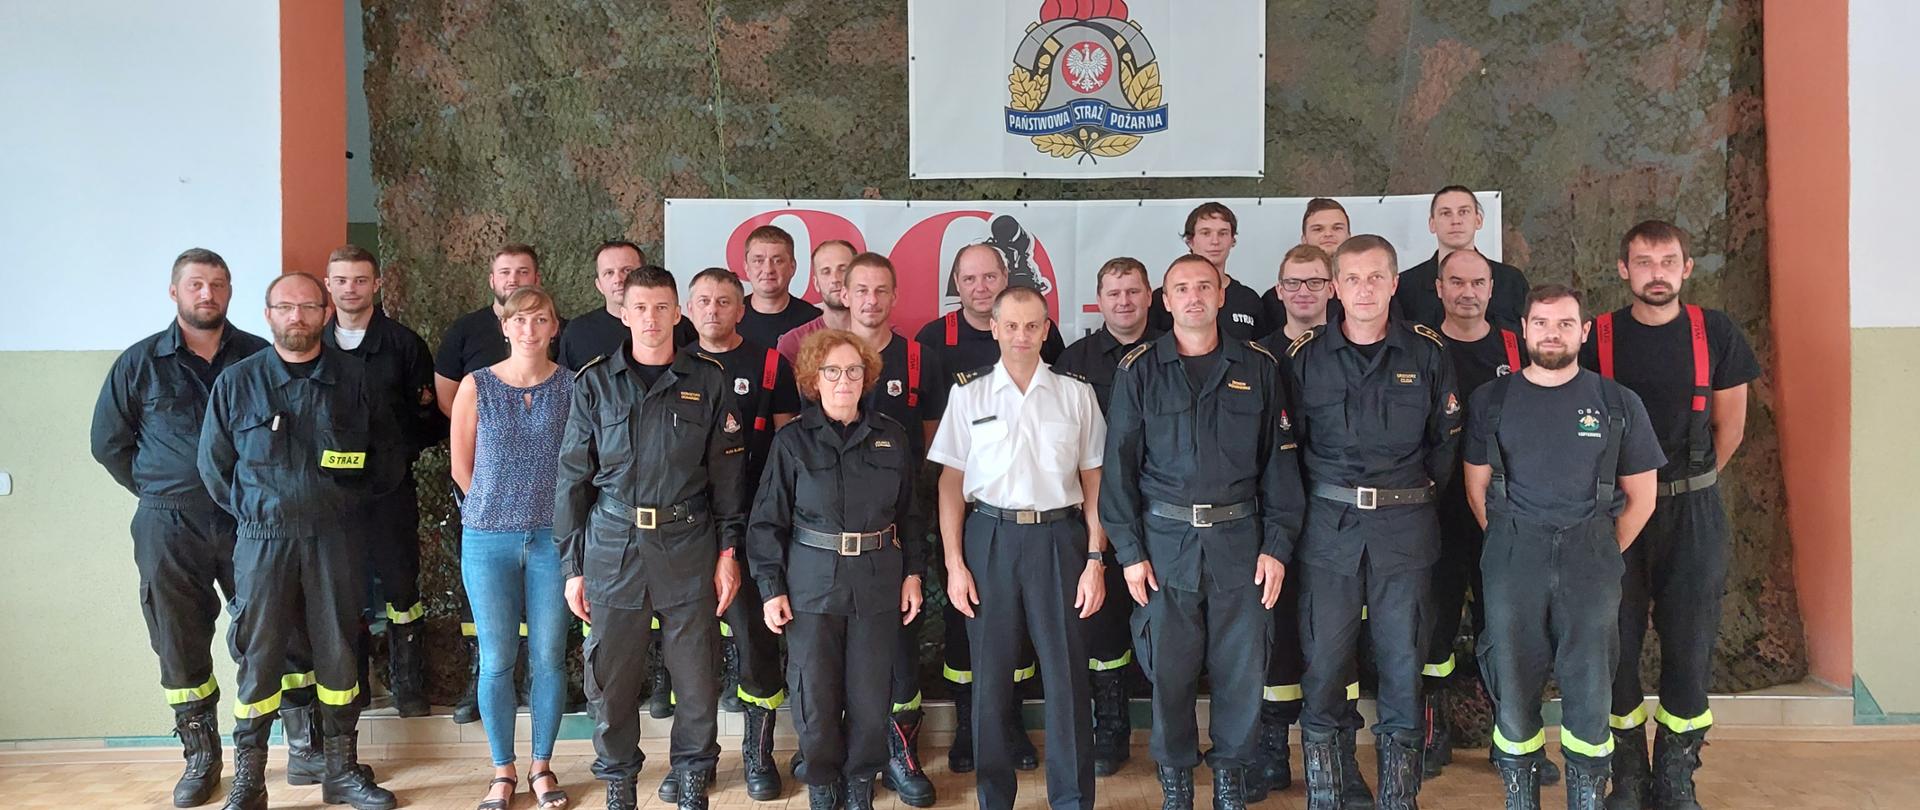 Komisja egzaminacyjna wraz z Zastępcą Komendanta Powiatowego PSP w Żywcu oraz strażacy przystępujący do egzaminu. 